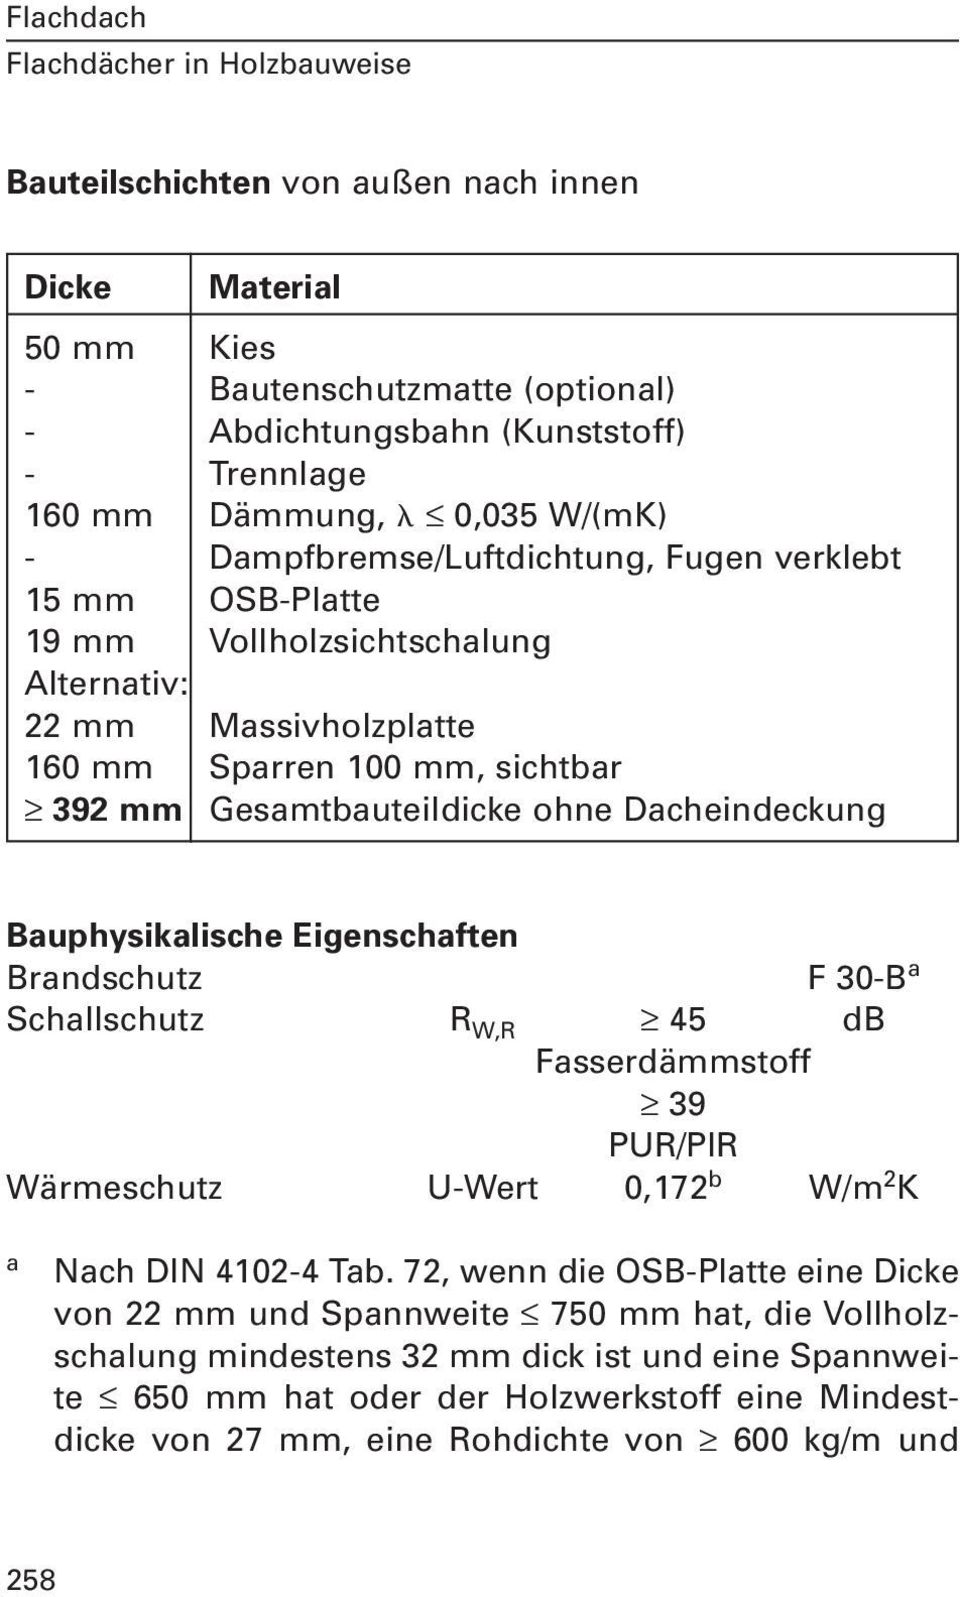 Bauphysikalische Eigenschaften Brandschutz F 30-B a Schallschutz R W,R 45 db Fasserdämmstoff 39 PUR/PIR Wärmeschutz U-Wert 0,172 b W/m 2 K a Nach DIN 4102-4 Tab.